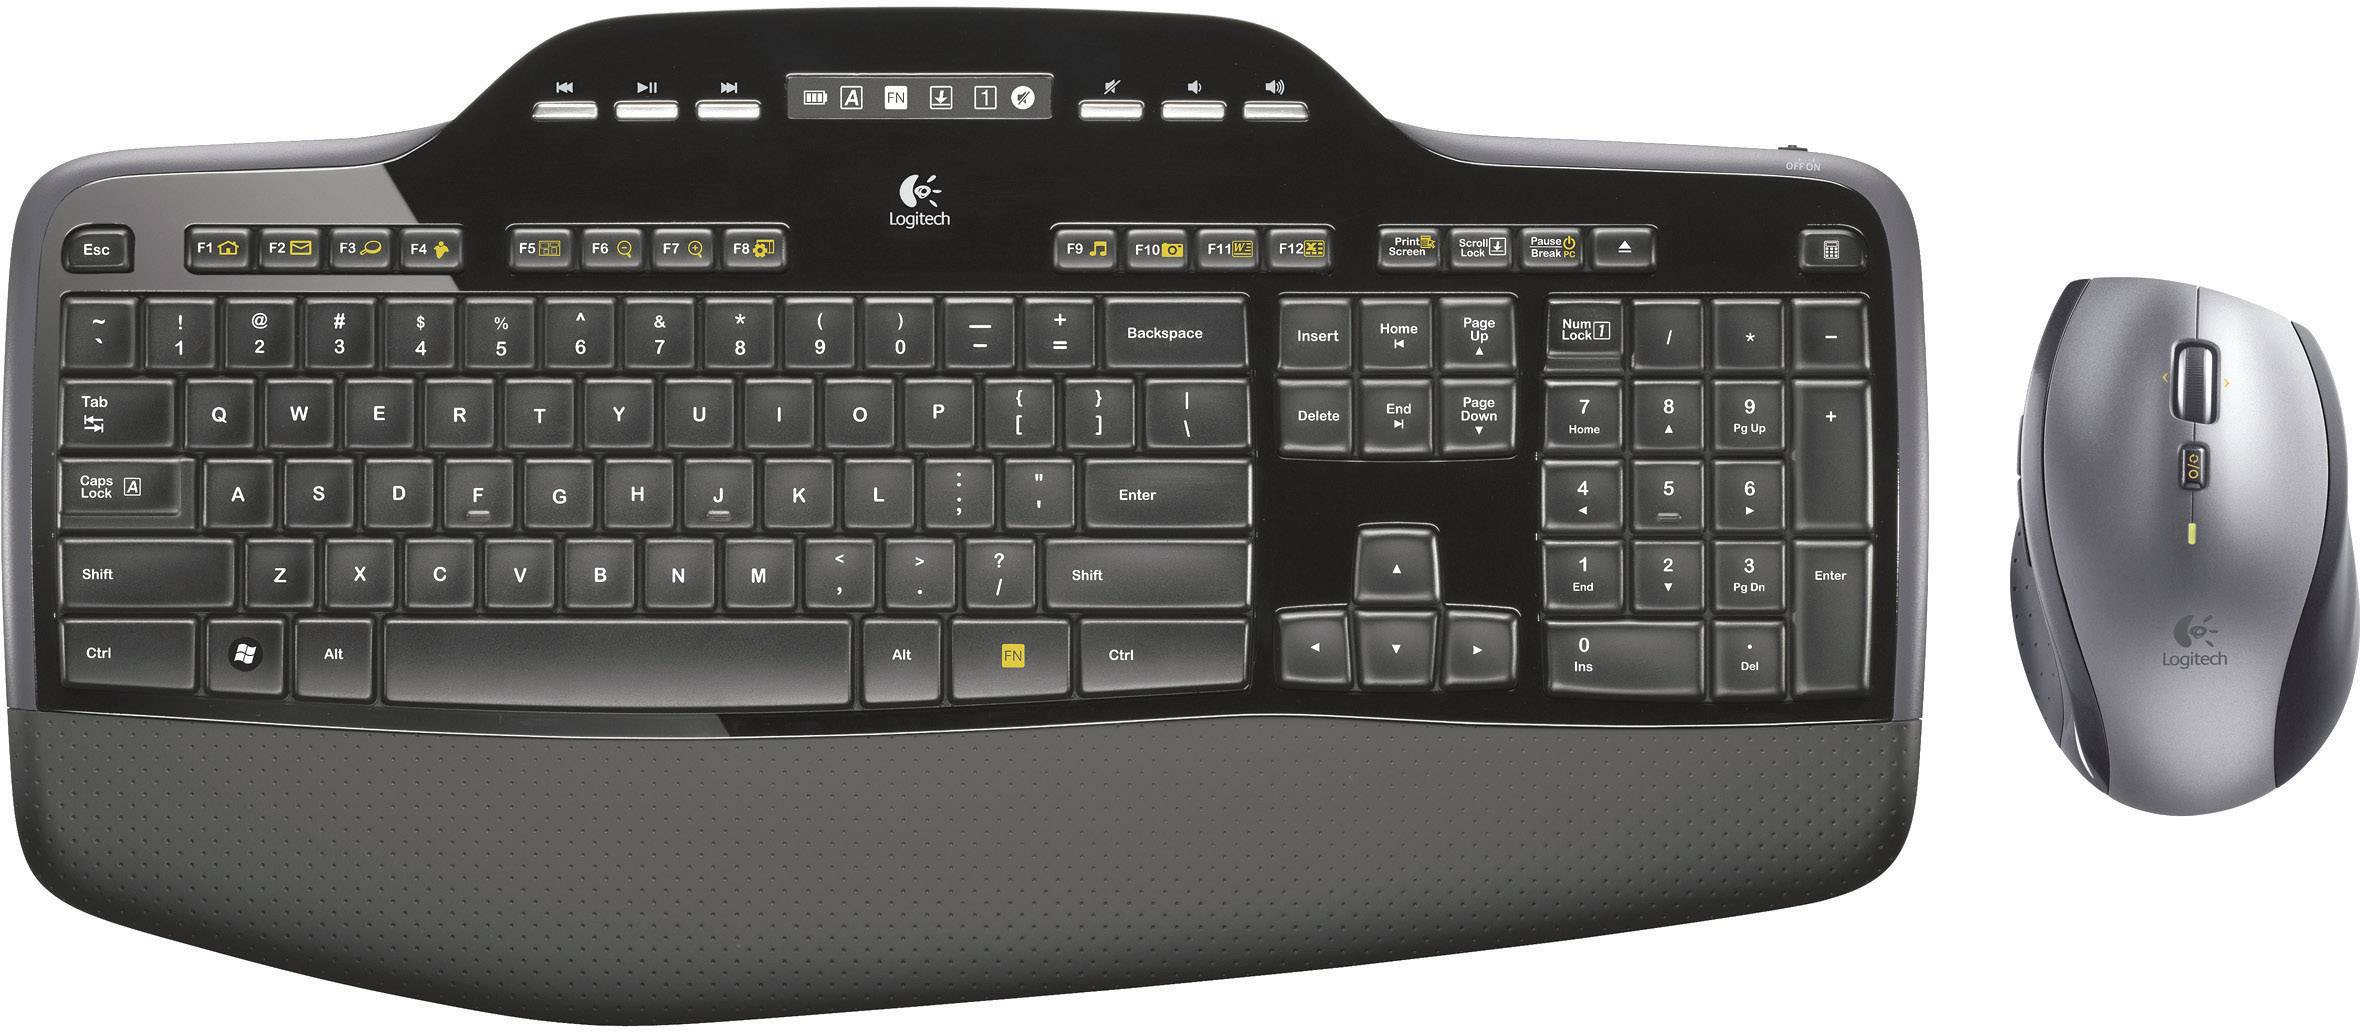 command key on logitech wireless keyboard